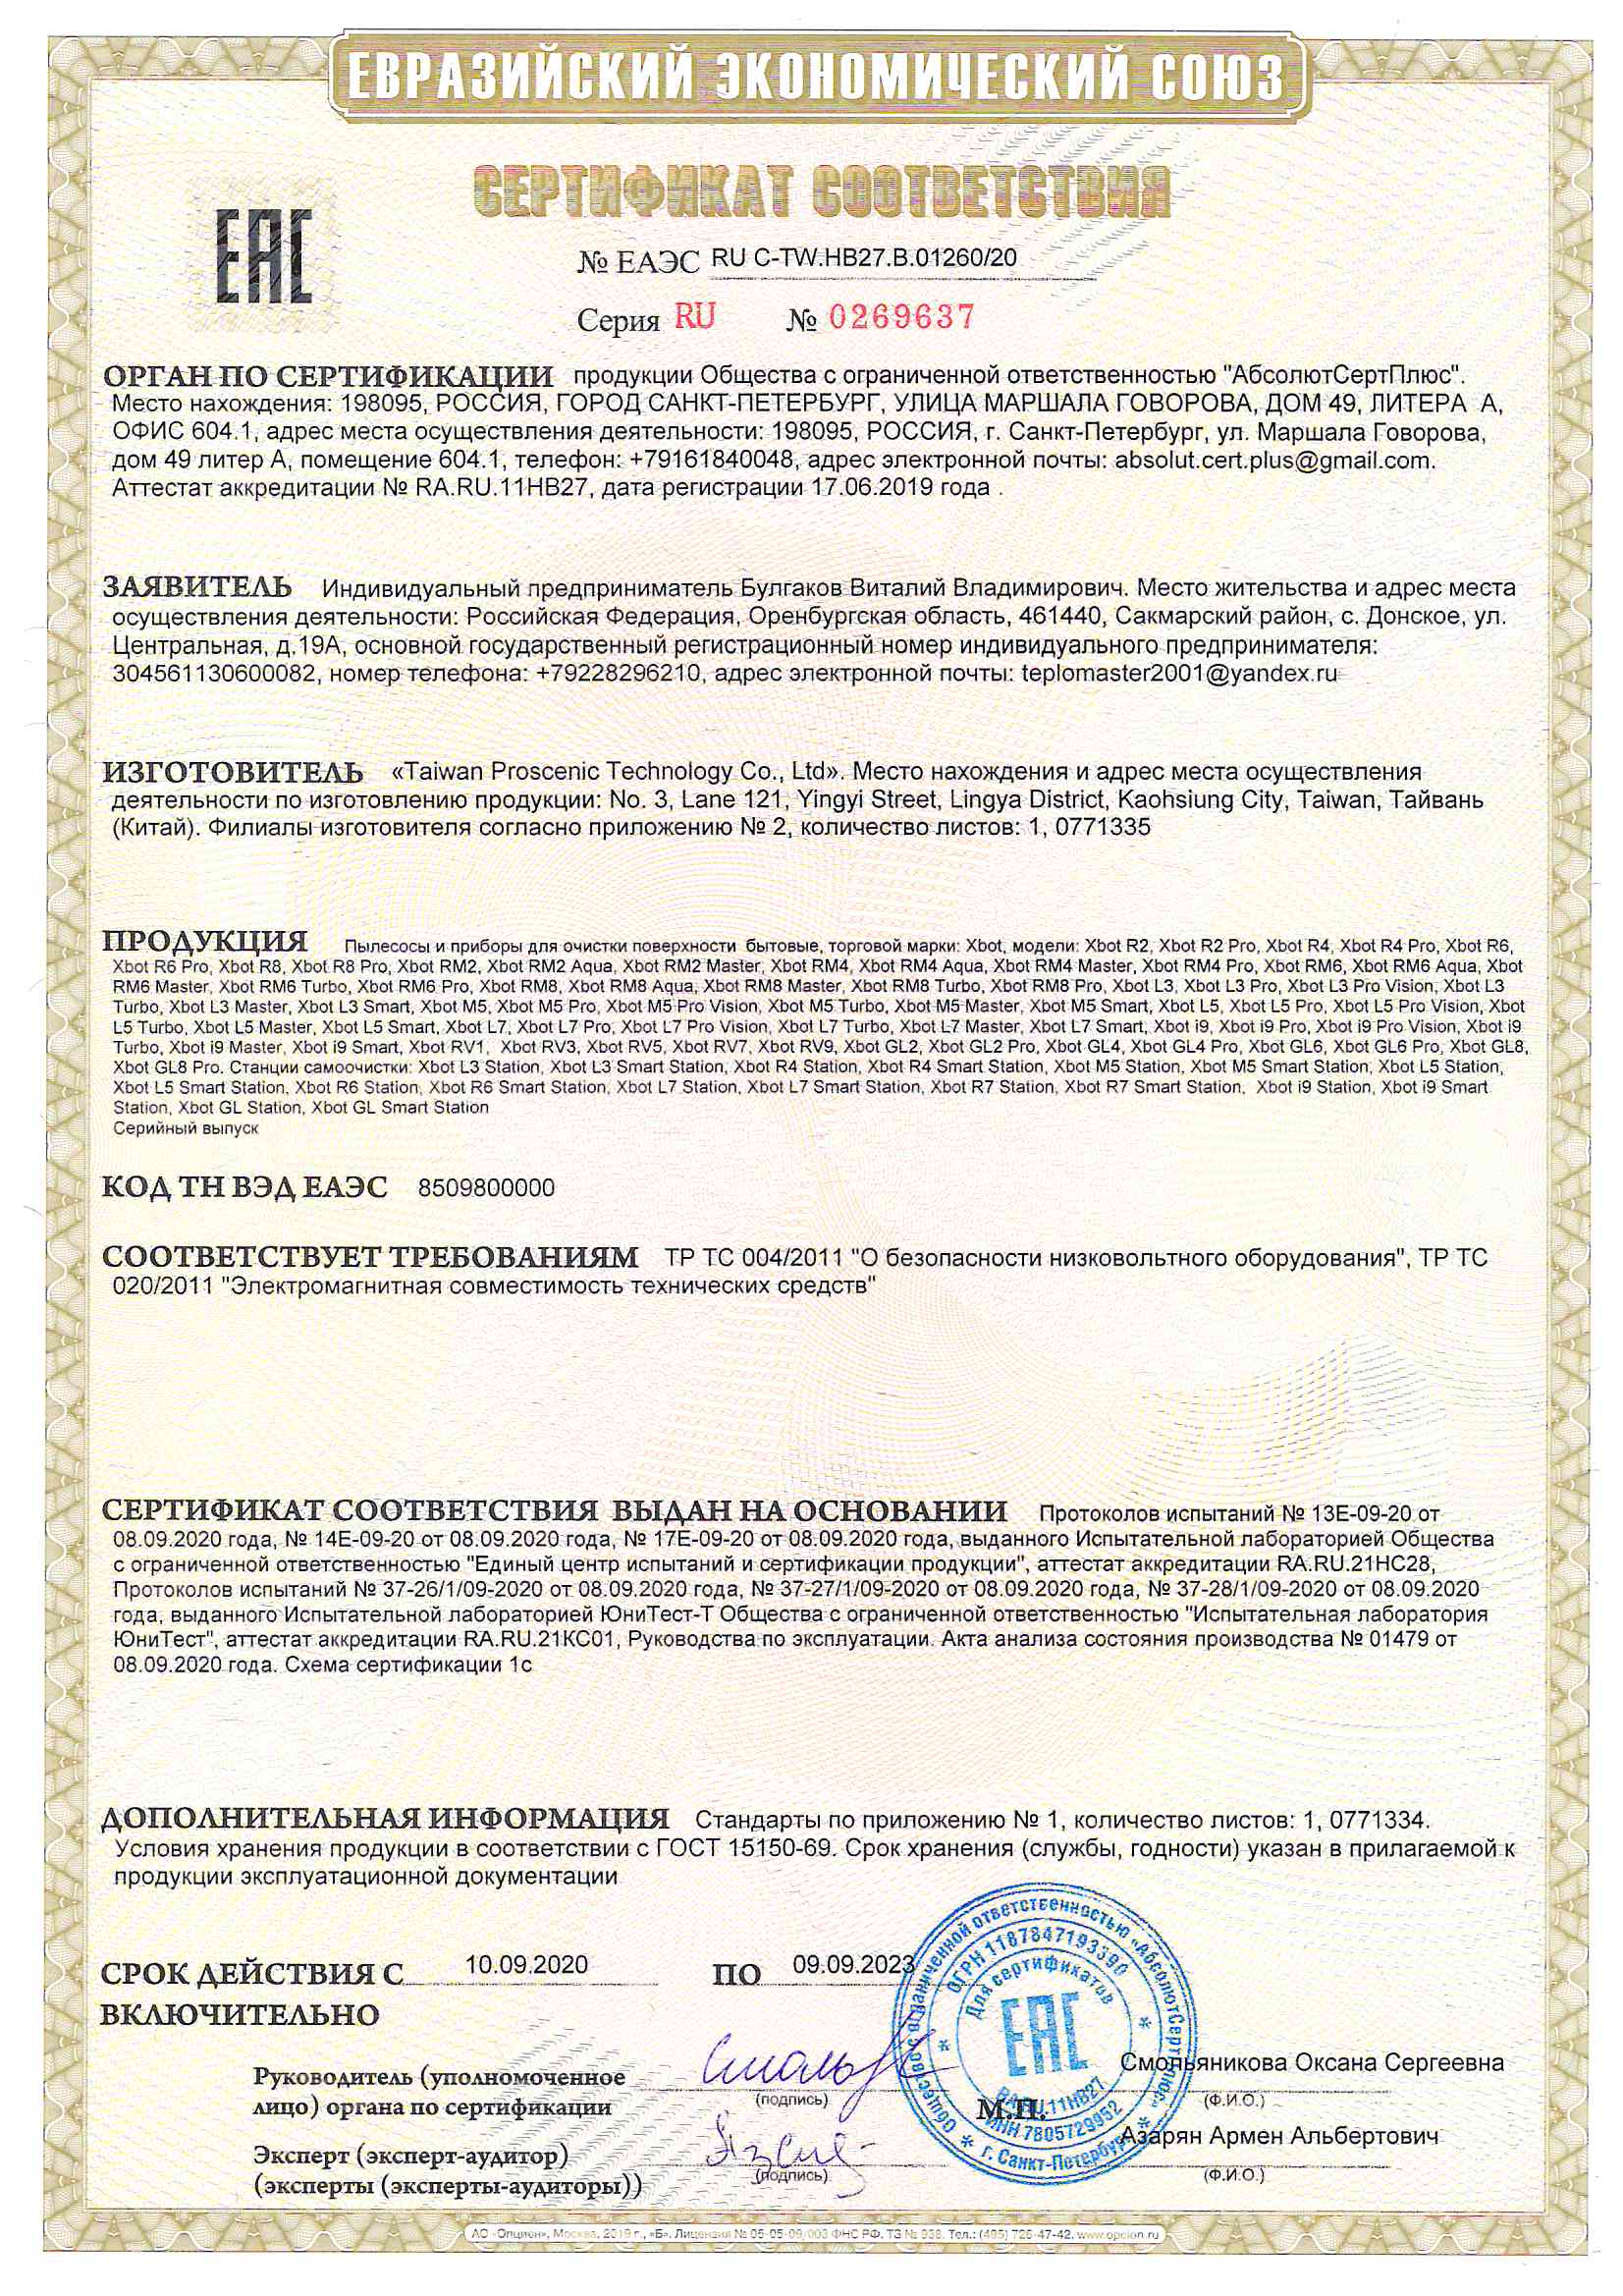 Сертификат соответствия Xbot